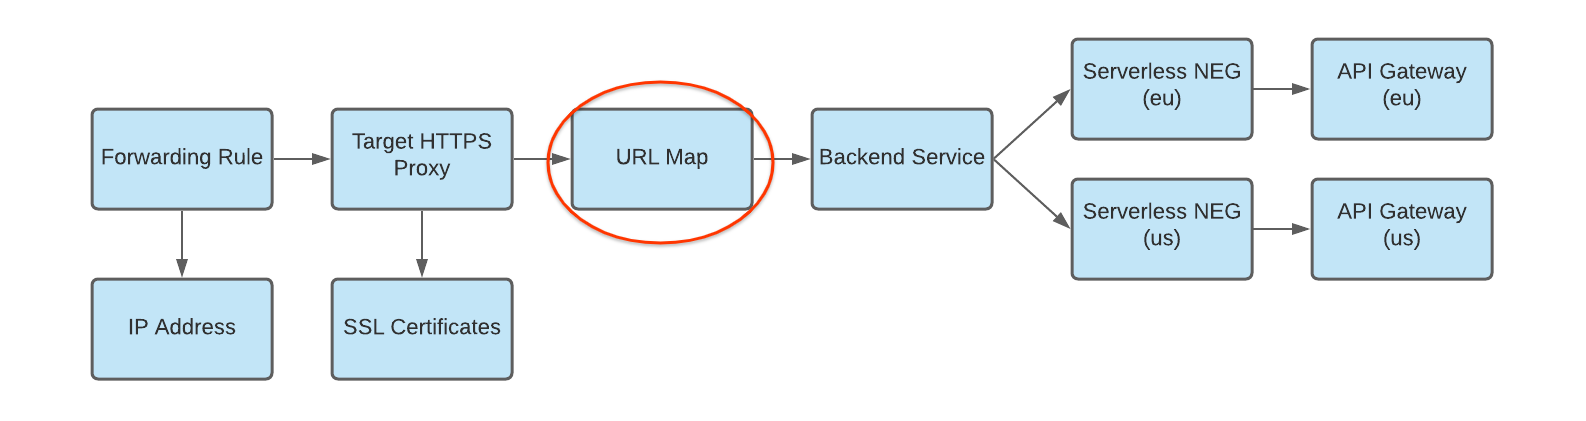 diagrama de mapa de URL al servicio de backend con varias implementaciones